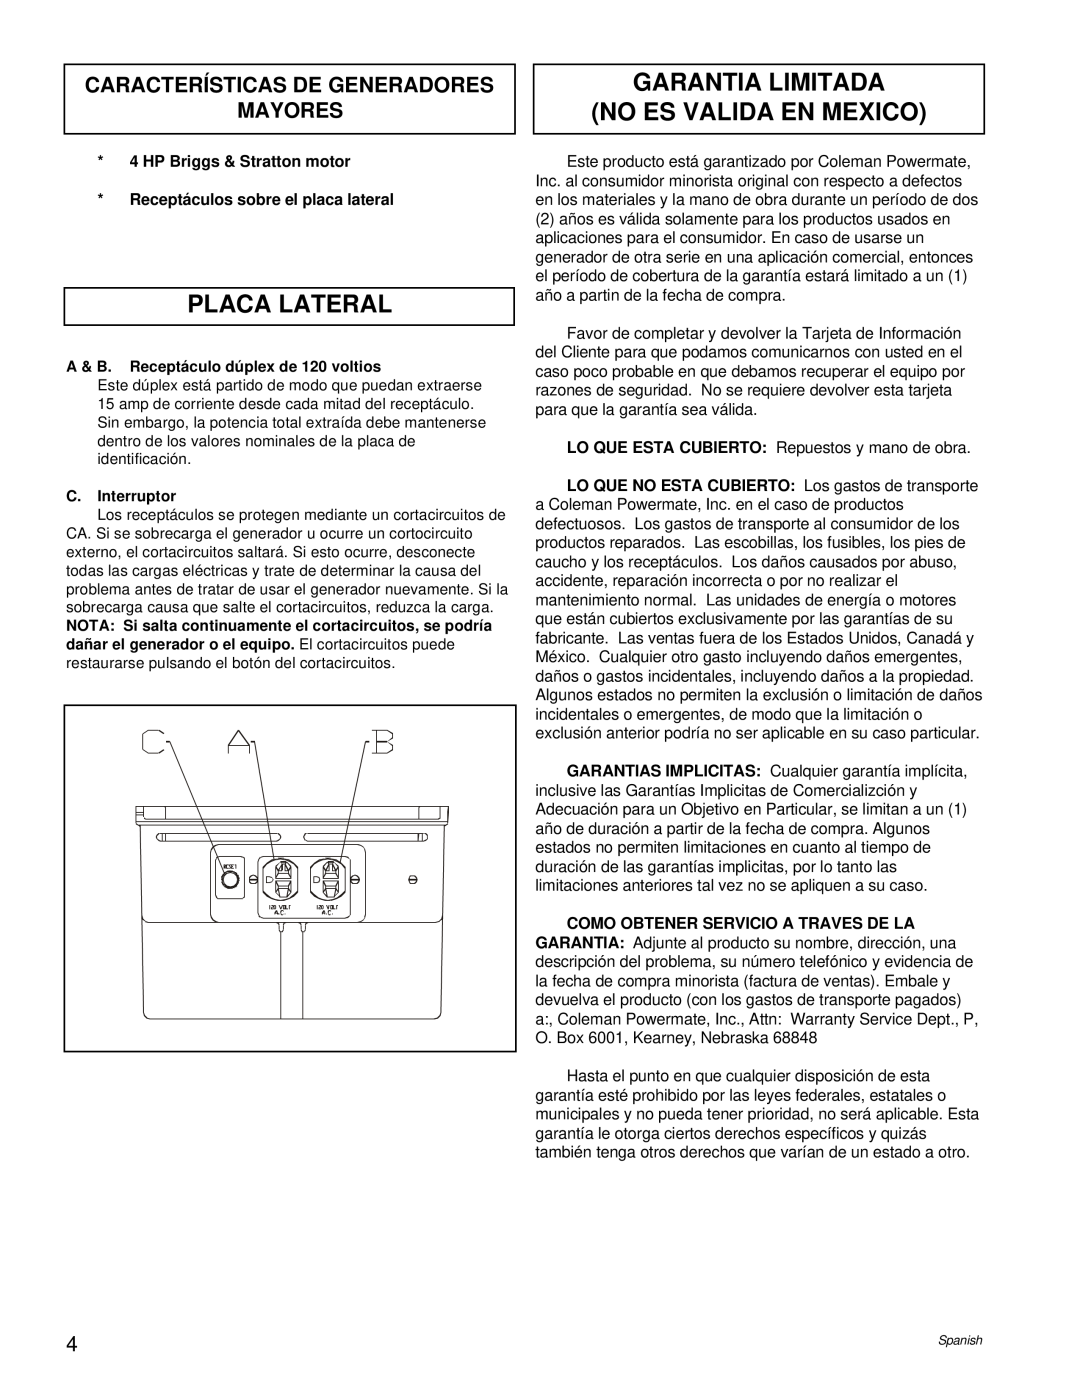 Powermate PM0421100 Placa Lateral, Garantia Limitada No Es Valida En Mexico, HP Briggs & Stratton motor, C.Interruptor 